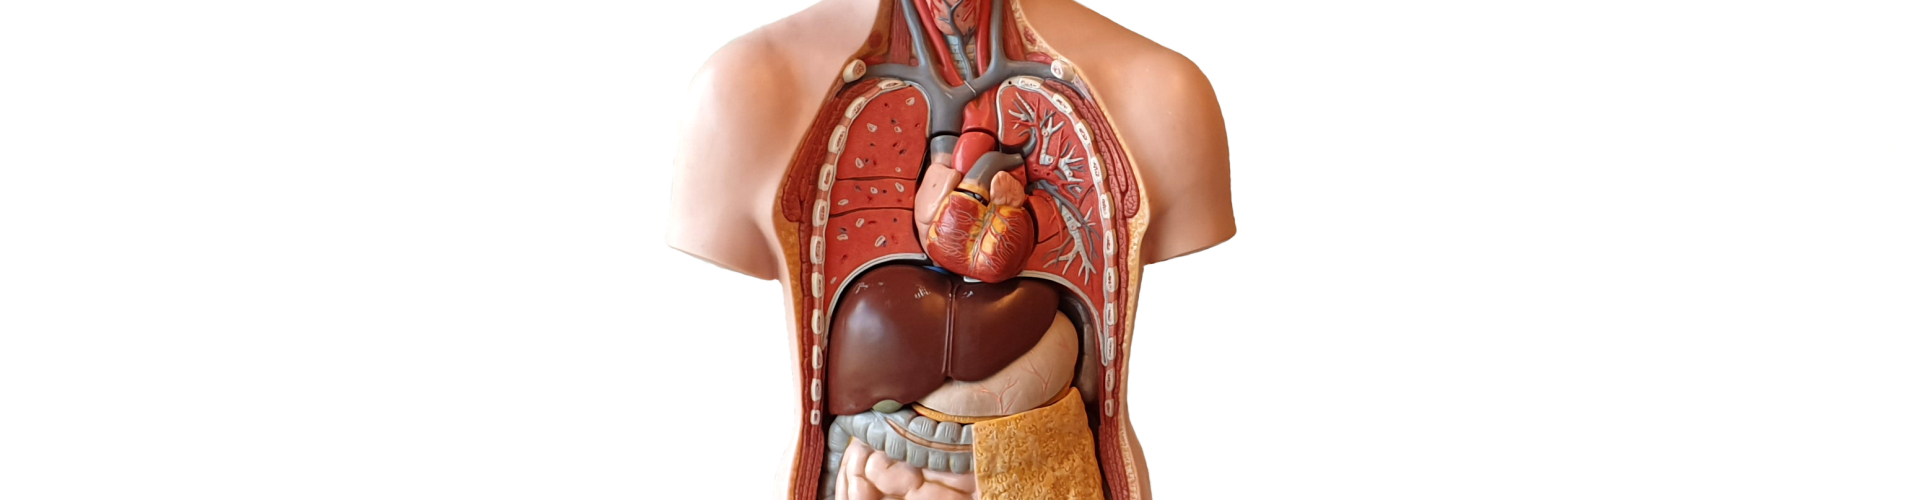 Cursus over het menselijk lichaam: Anatomie & Fysiologie